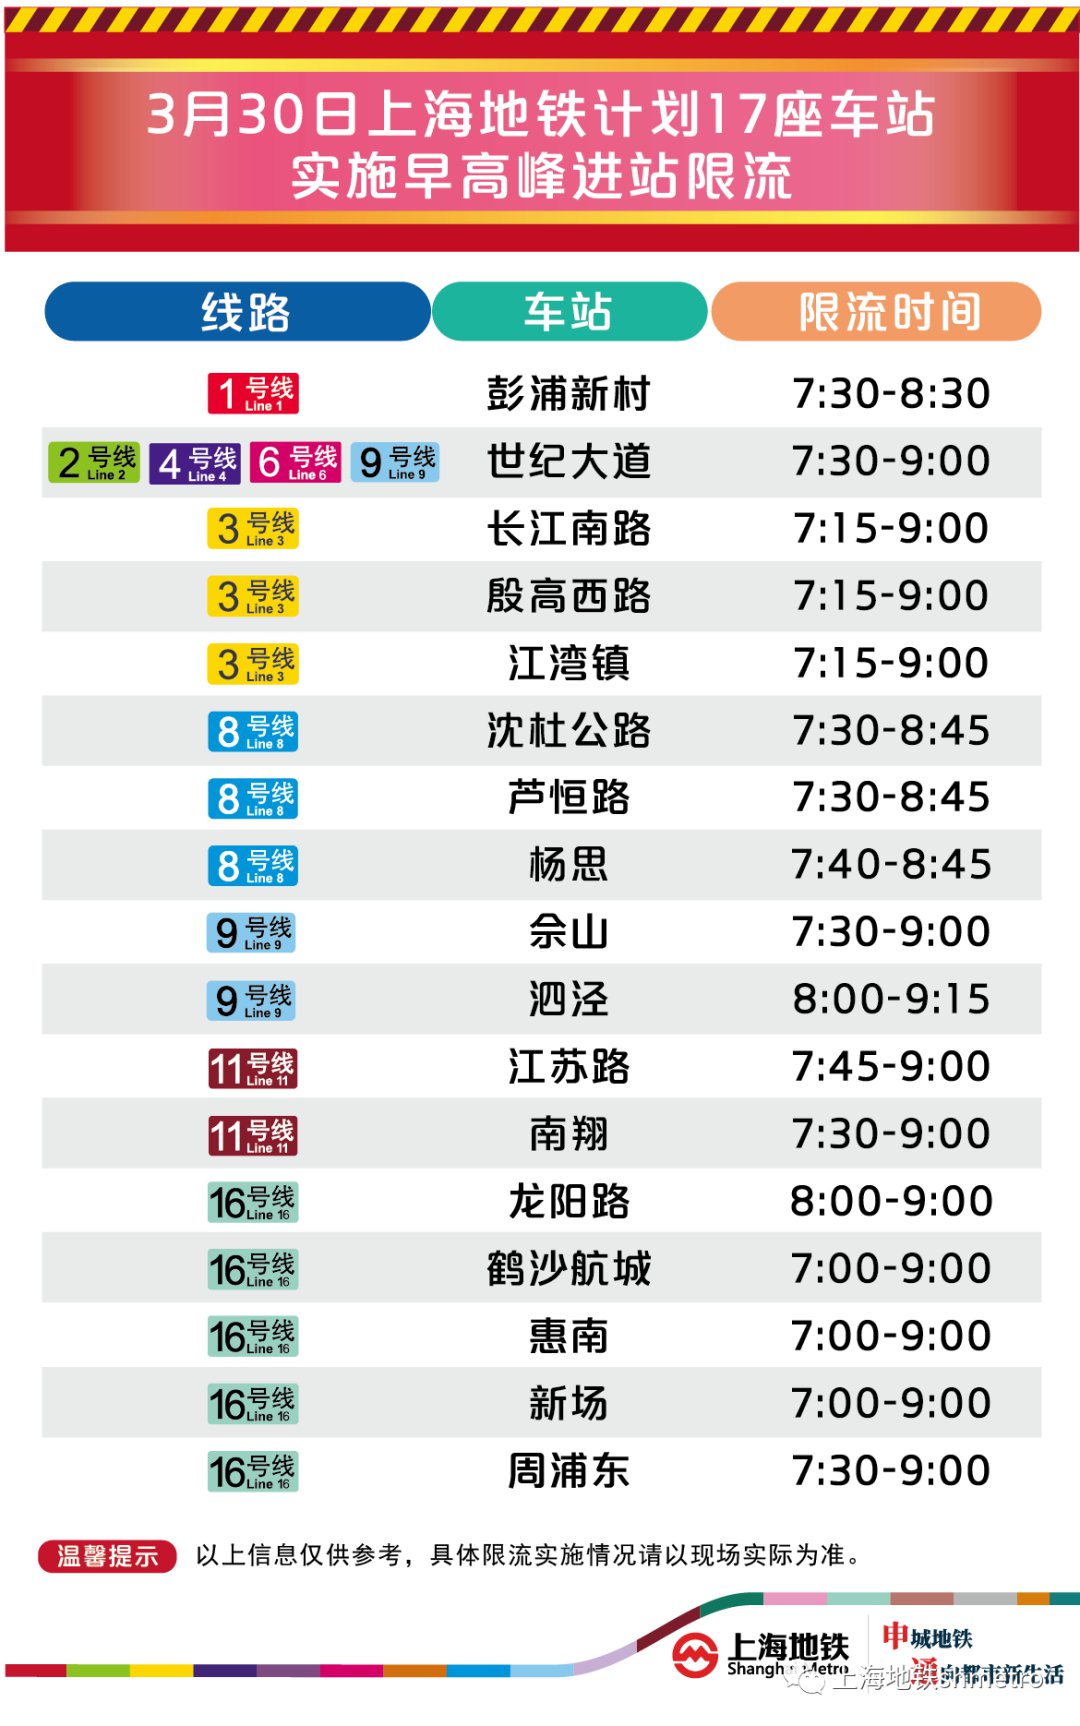 3月30日周一 上海17座地铁站早高峰限流